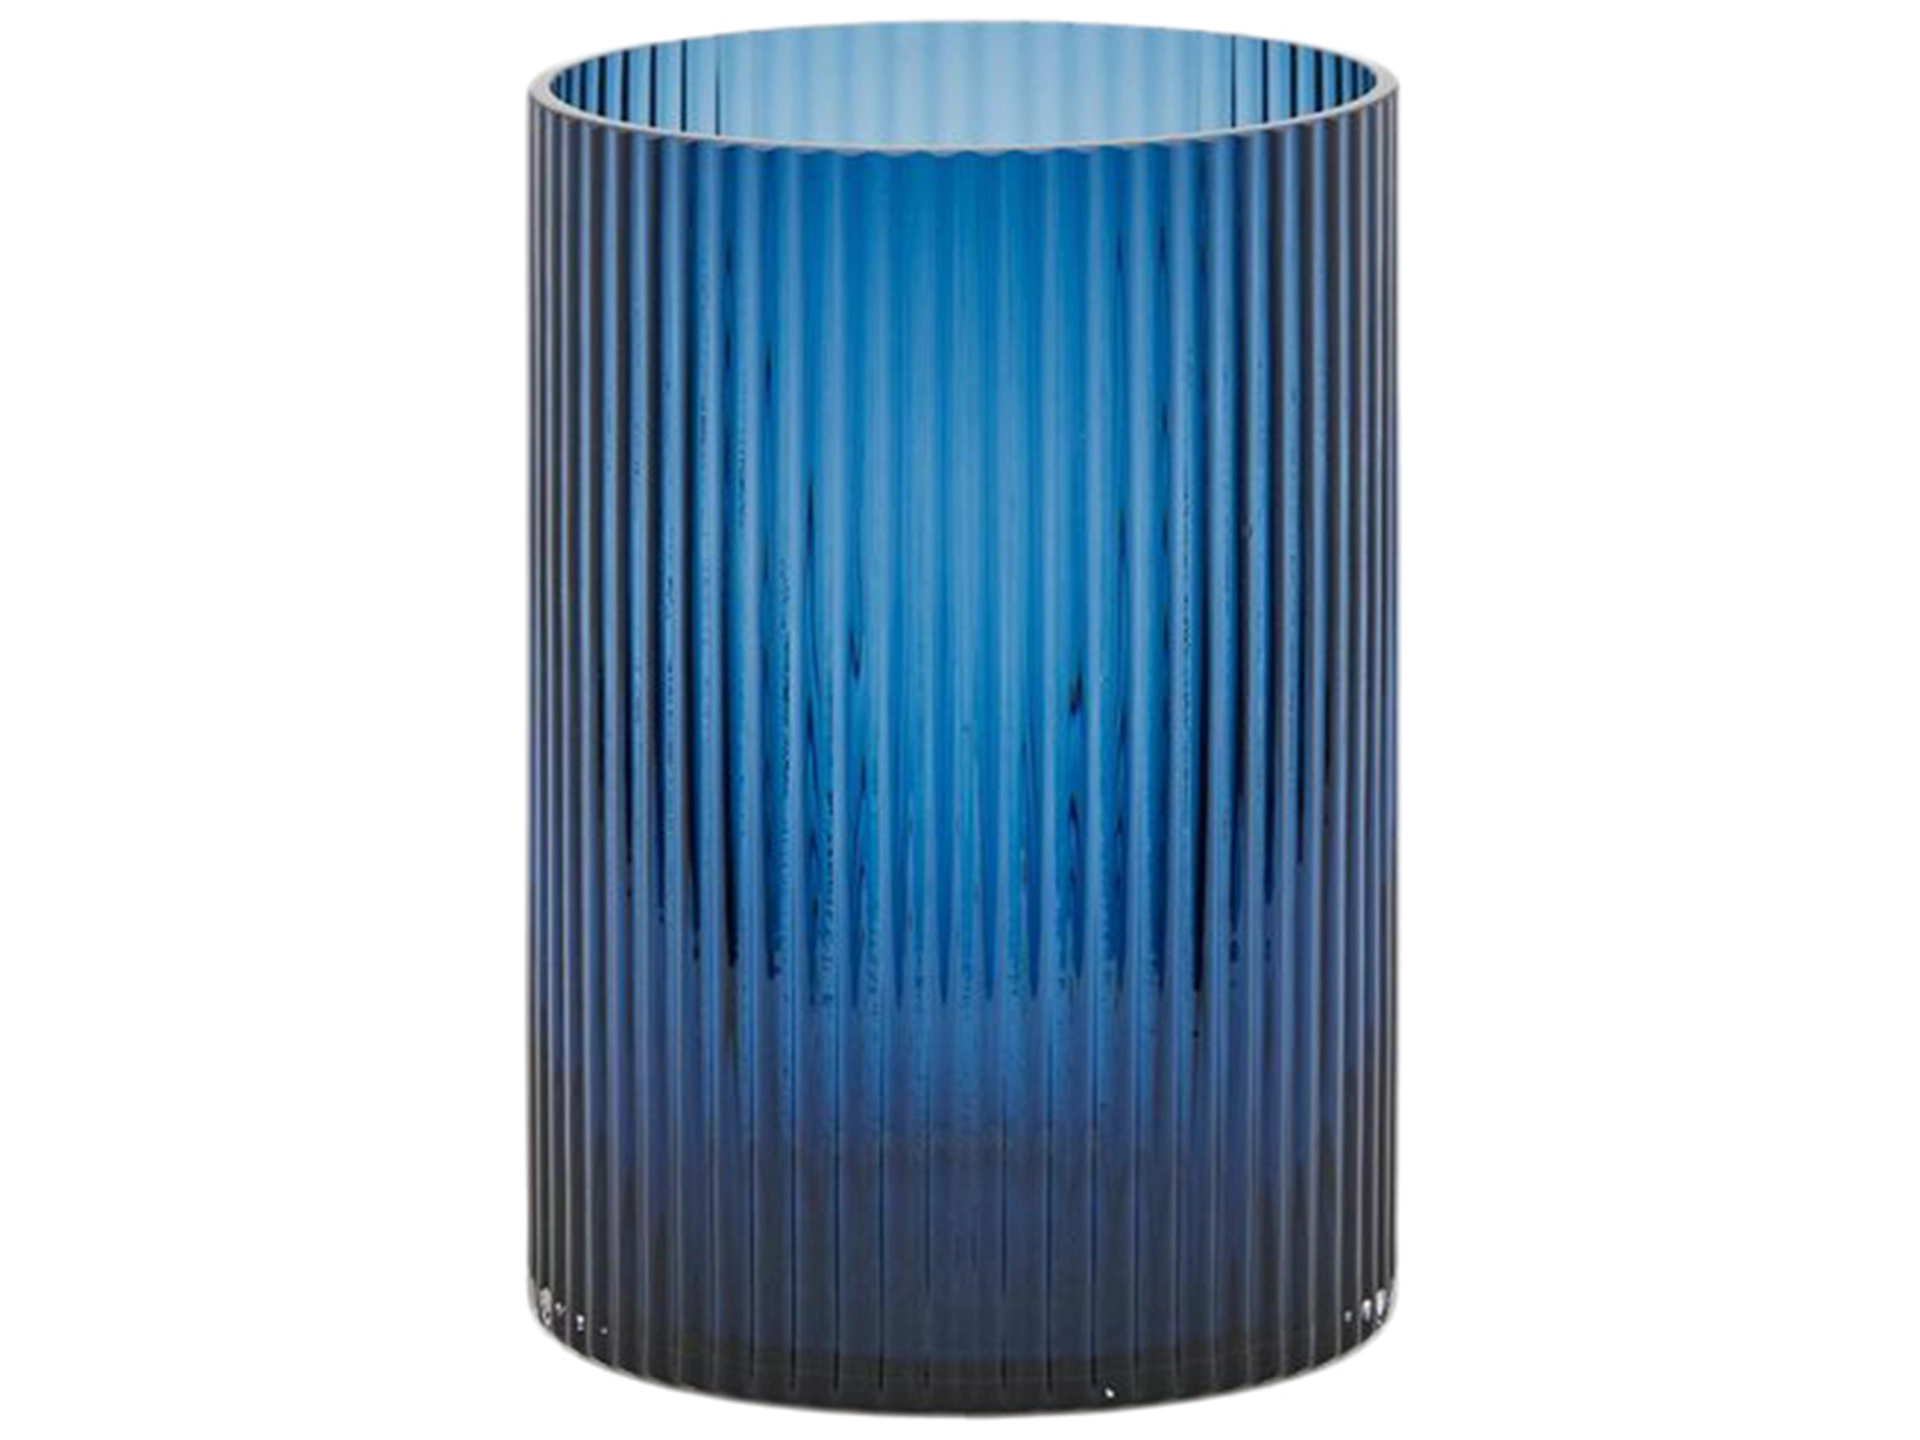 Vase Glas Dunkelblau H: 22 cm Edg